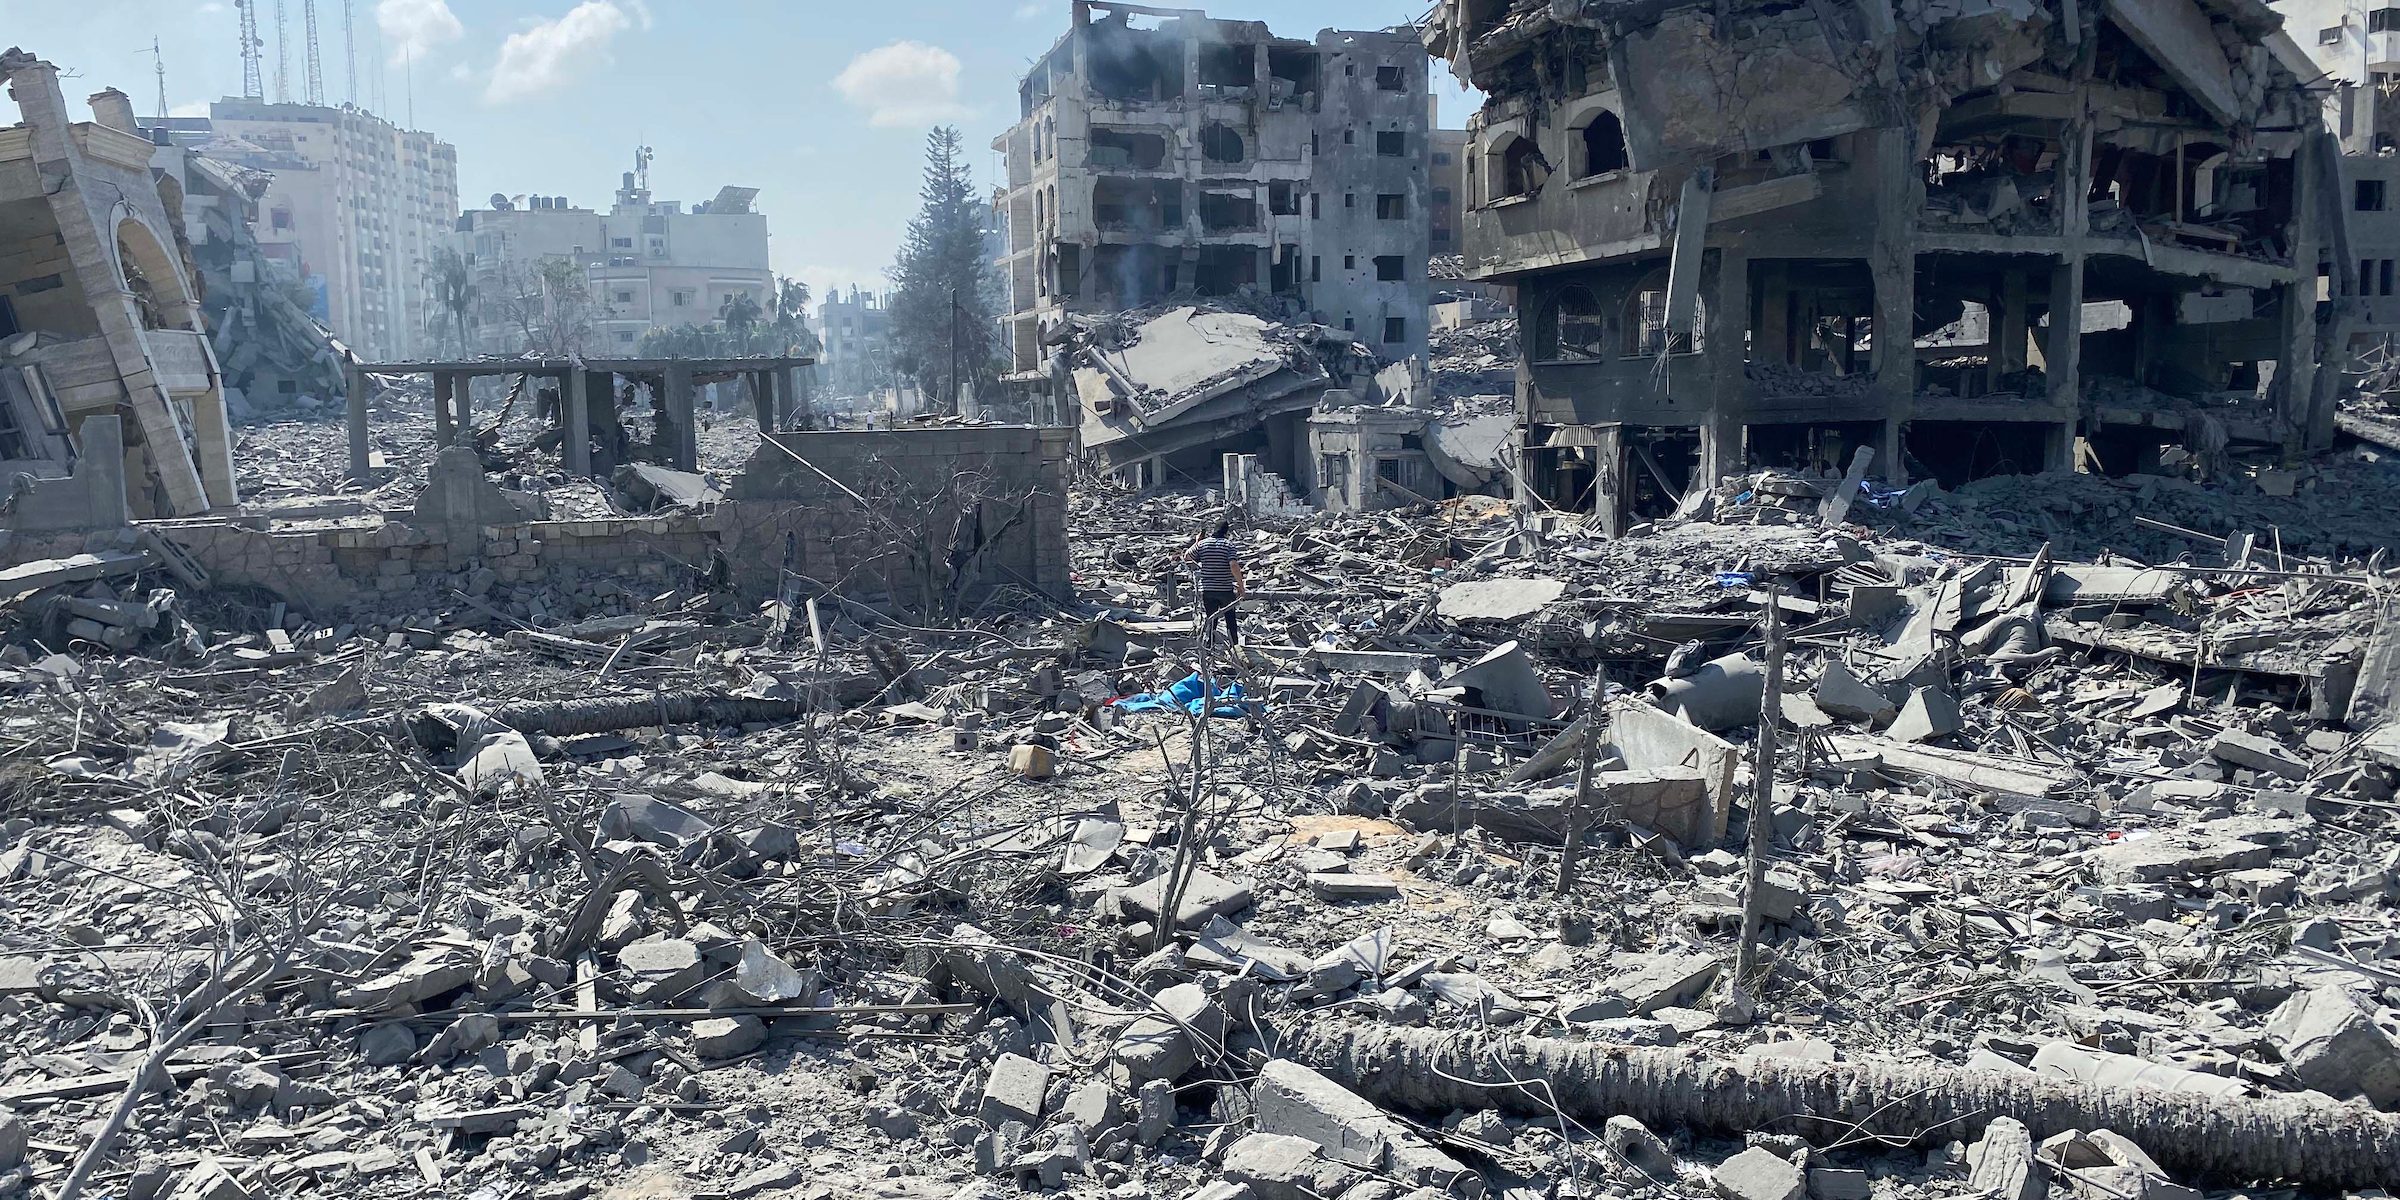 Gaza: Worsening Humanitarian Disaster